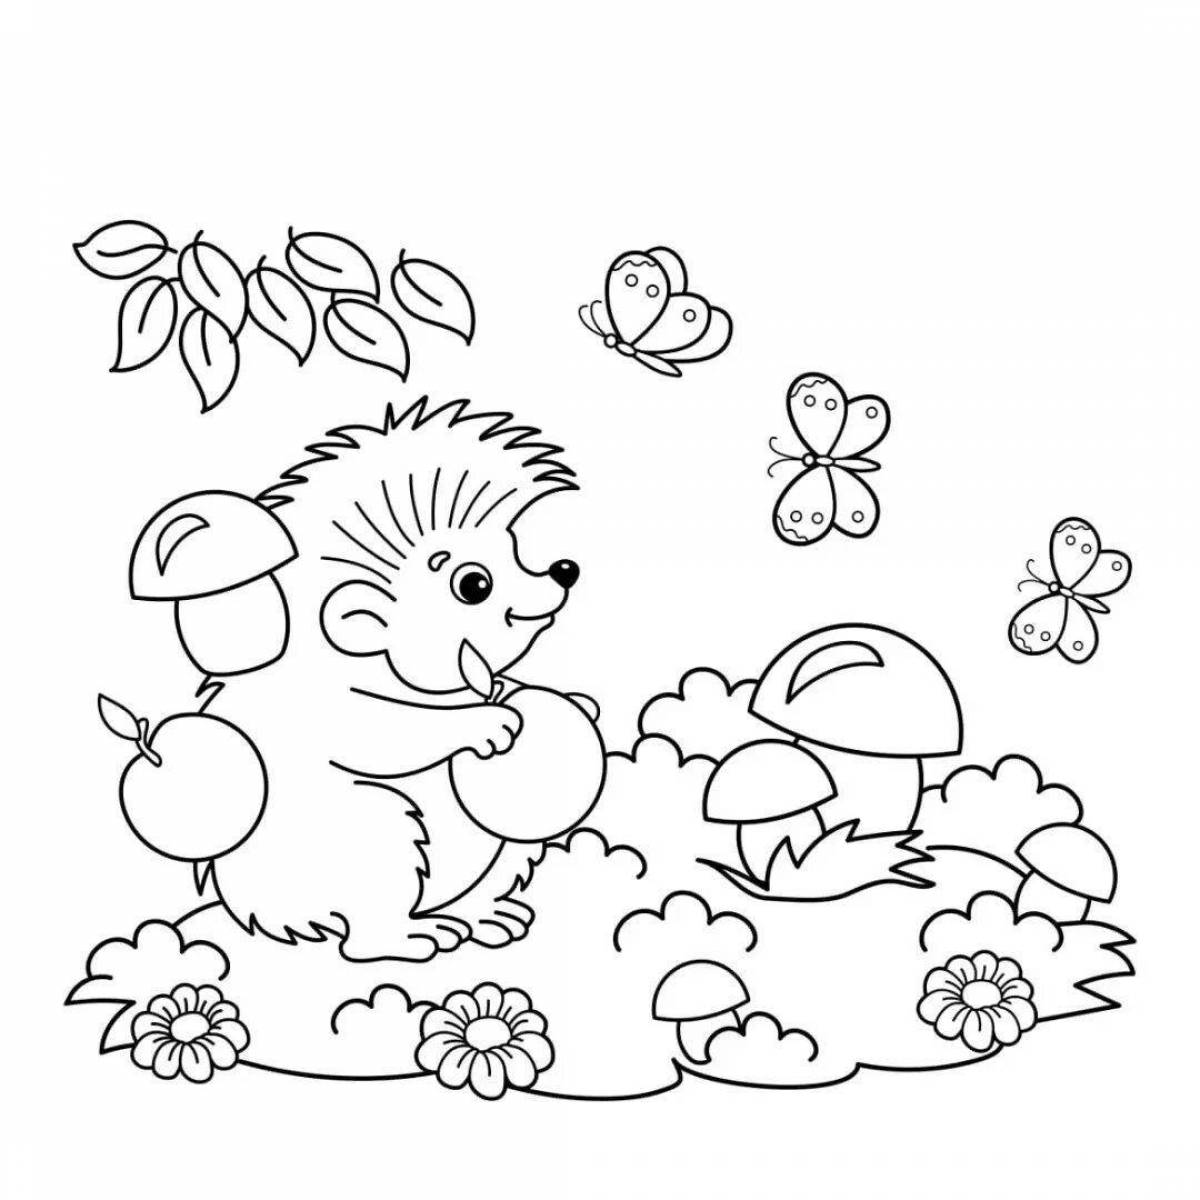 Pre-k magic hedgehog coloring page